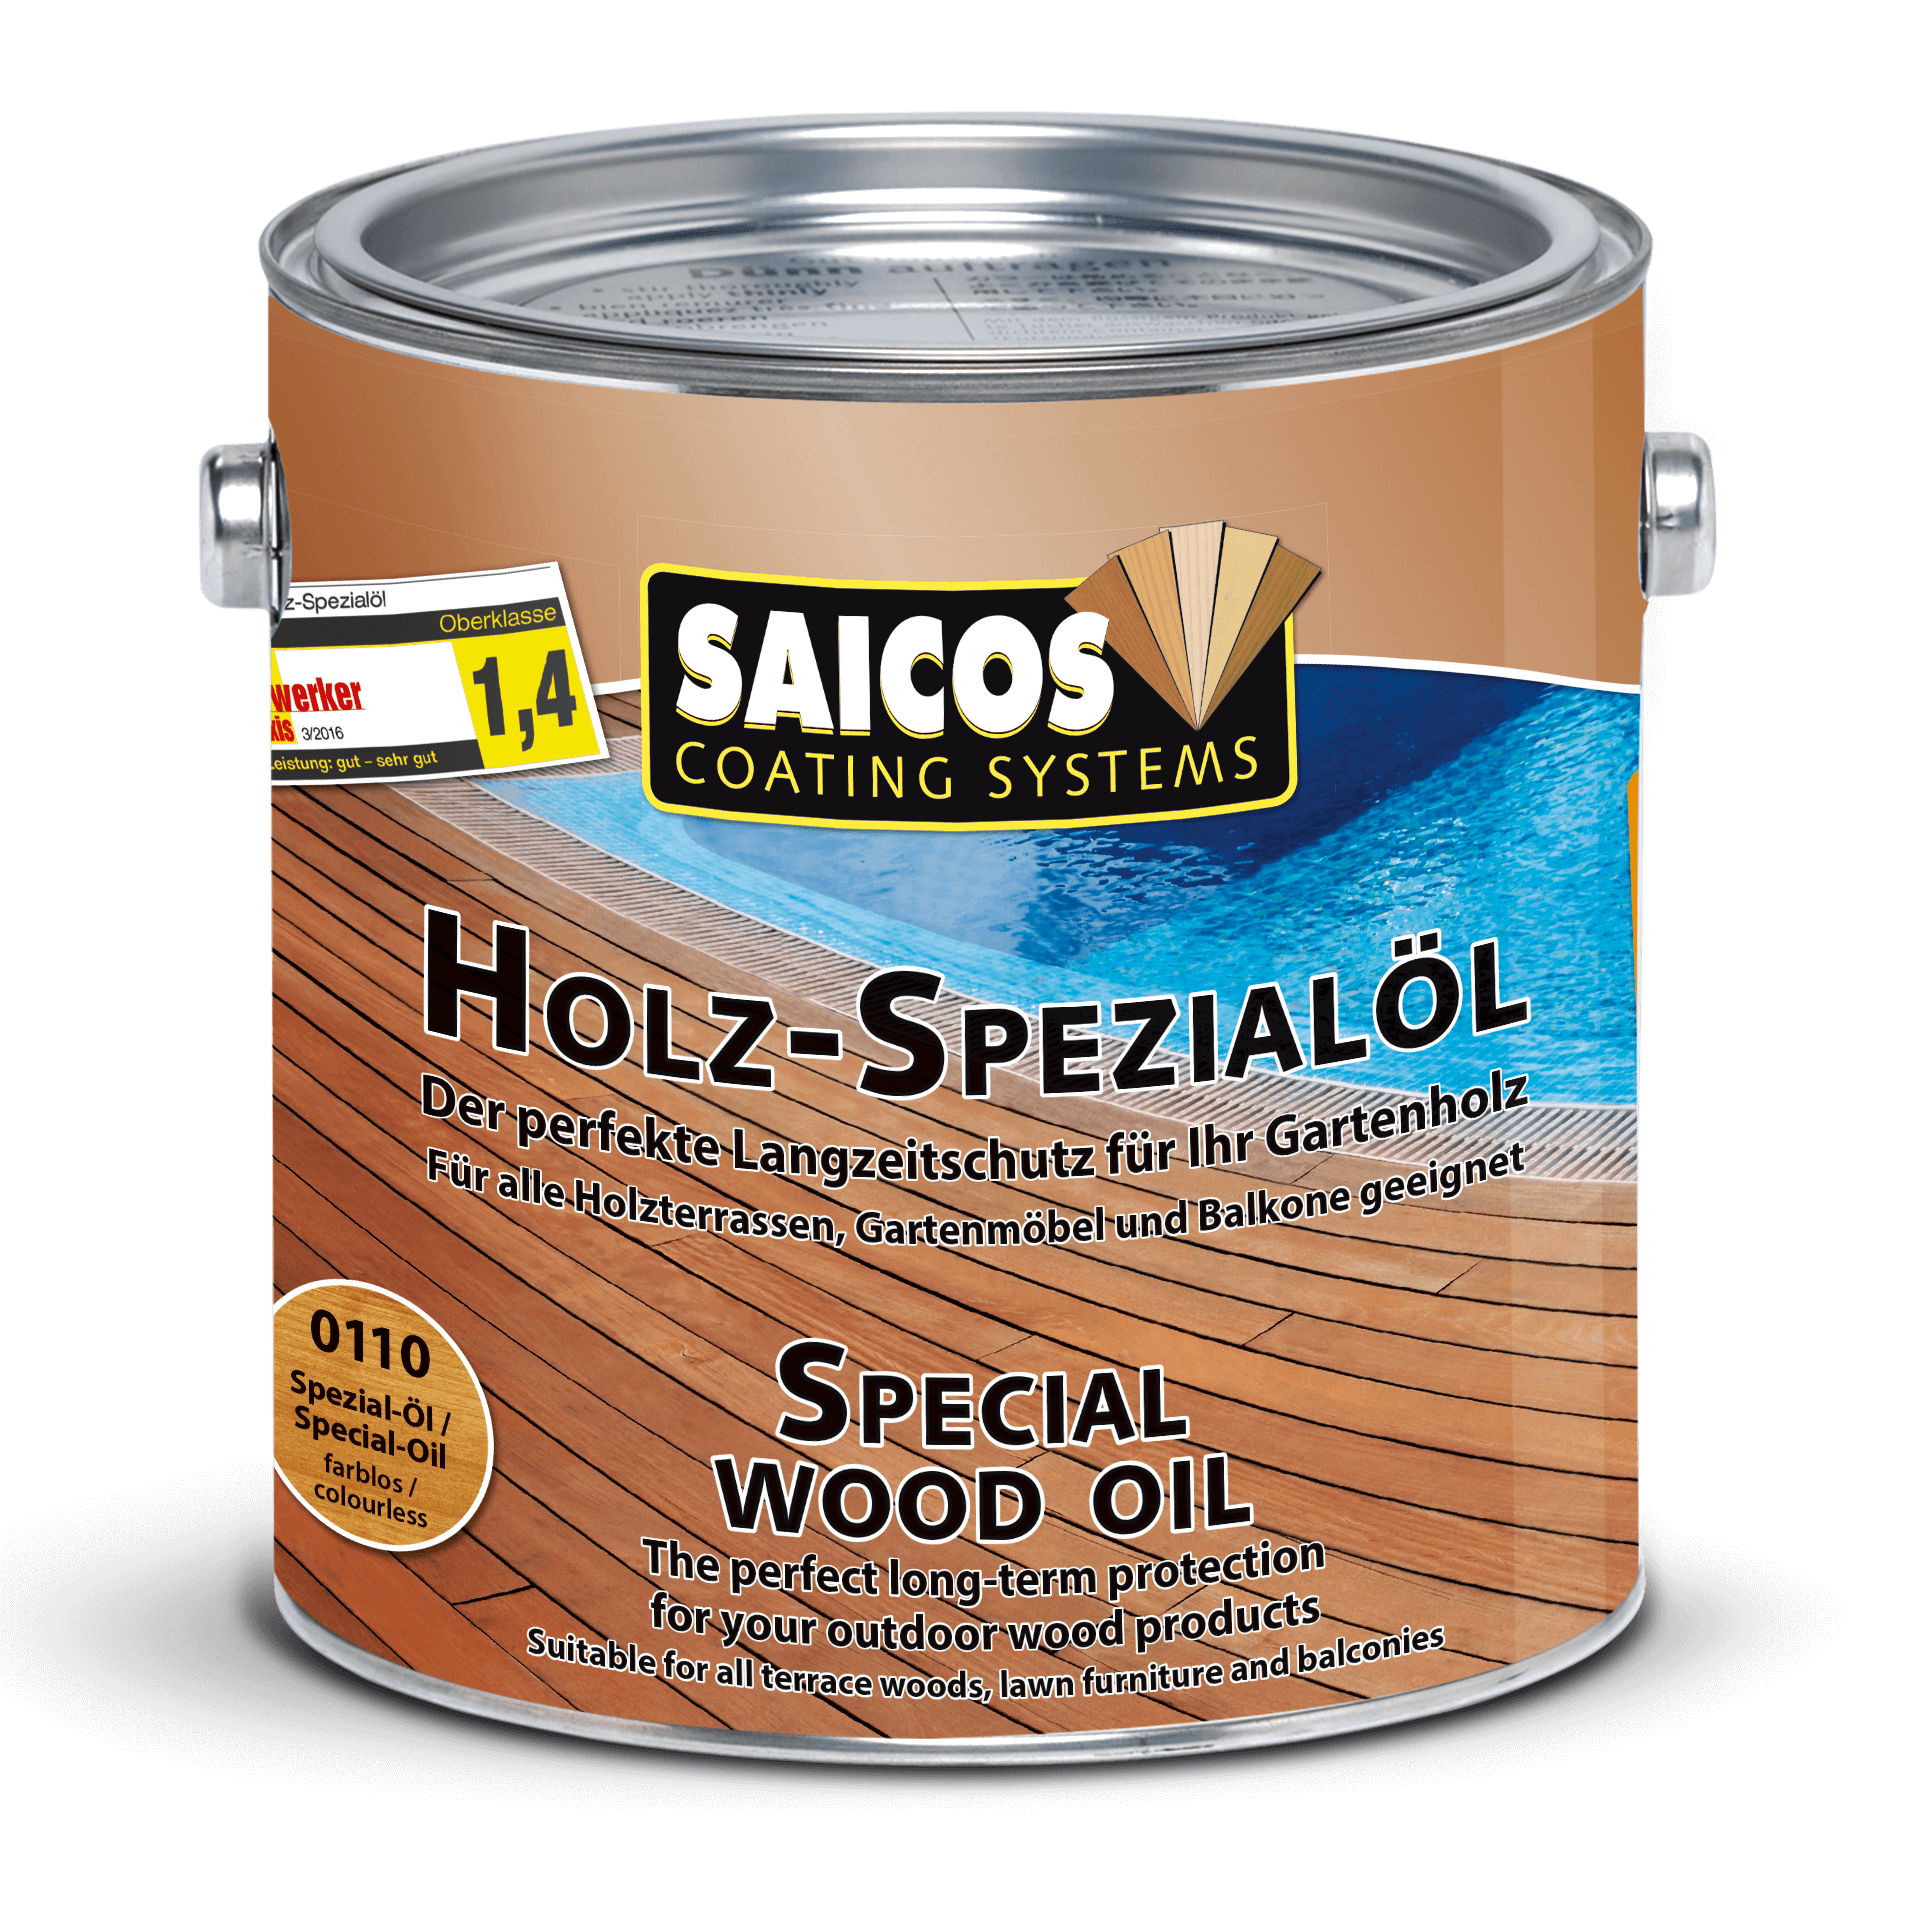 SAICOS Special Wood Oil - Dầu chuyên dụng cho sàn gỗ ngoài trời